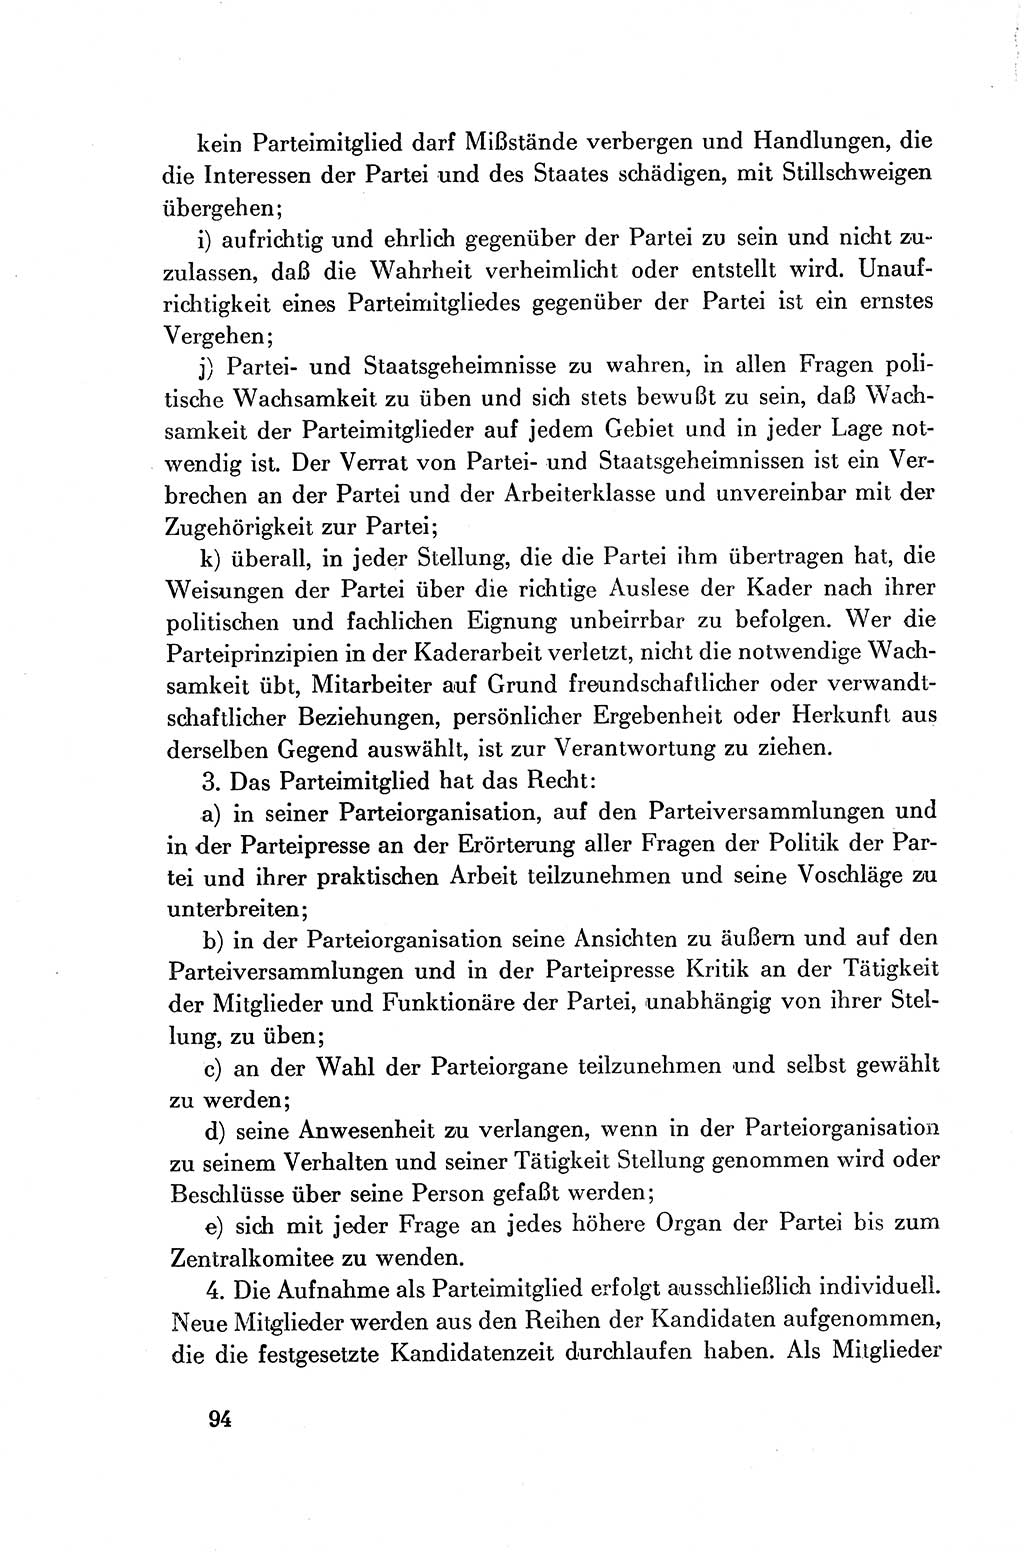 Dokumente der Sozialistischen Einheitspartei Deutschlands (SED) [Deutsche Demokratische Republik (DDR)] 1954-1955, Seite 94 (Dok. SED DDR 1954-1955, S. 94)